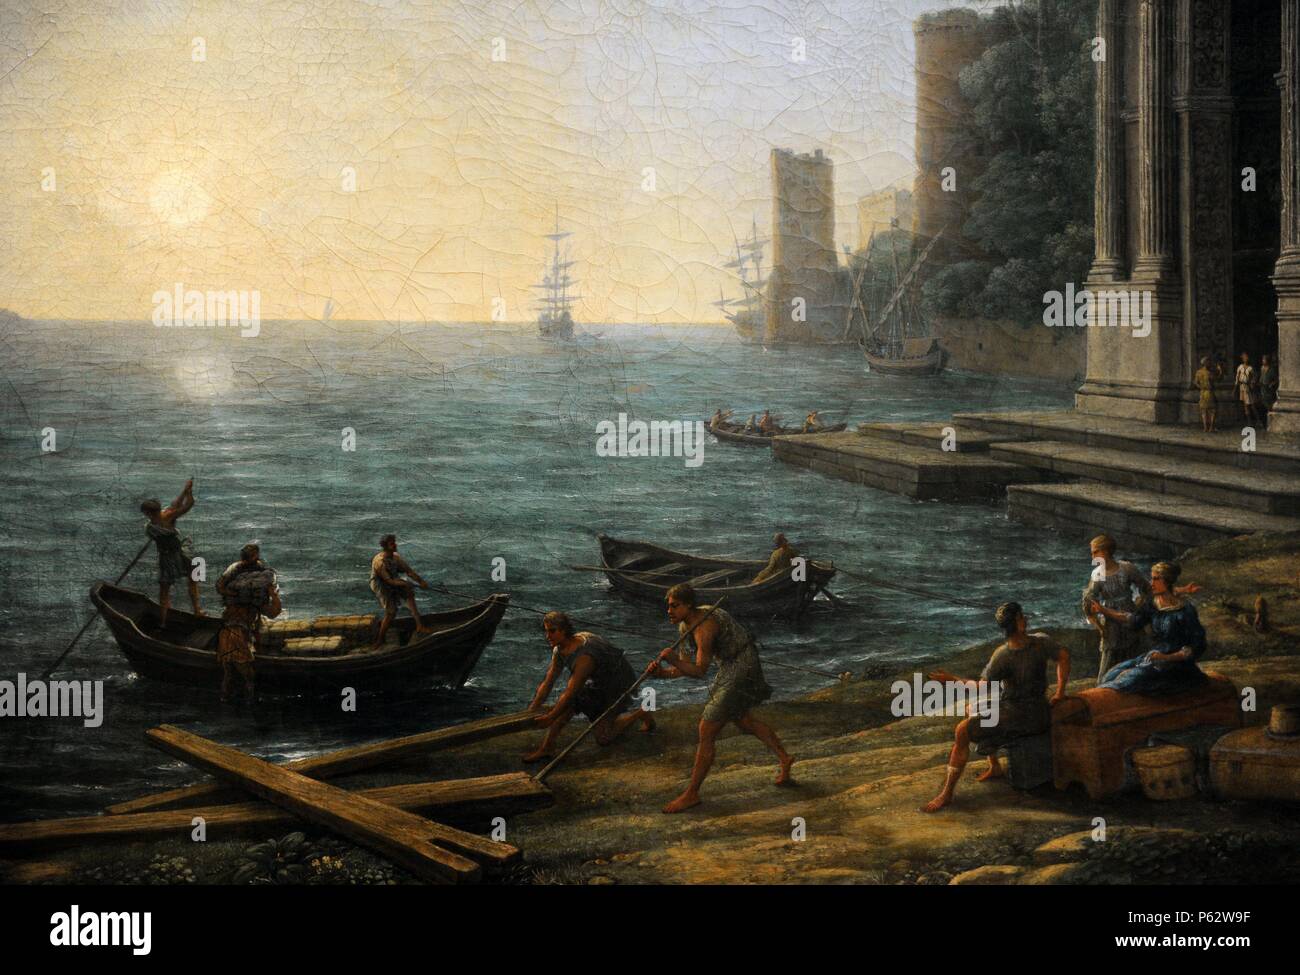 Claude Lorrain (1600-1682). Le peintre français. Port maritime à l'aube, 1674. Détail. L'Alte Pinakothek. Munich. L'Allemagne. Banque D'Images